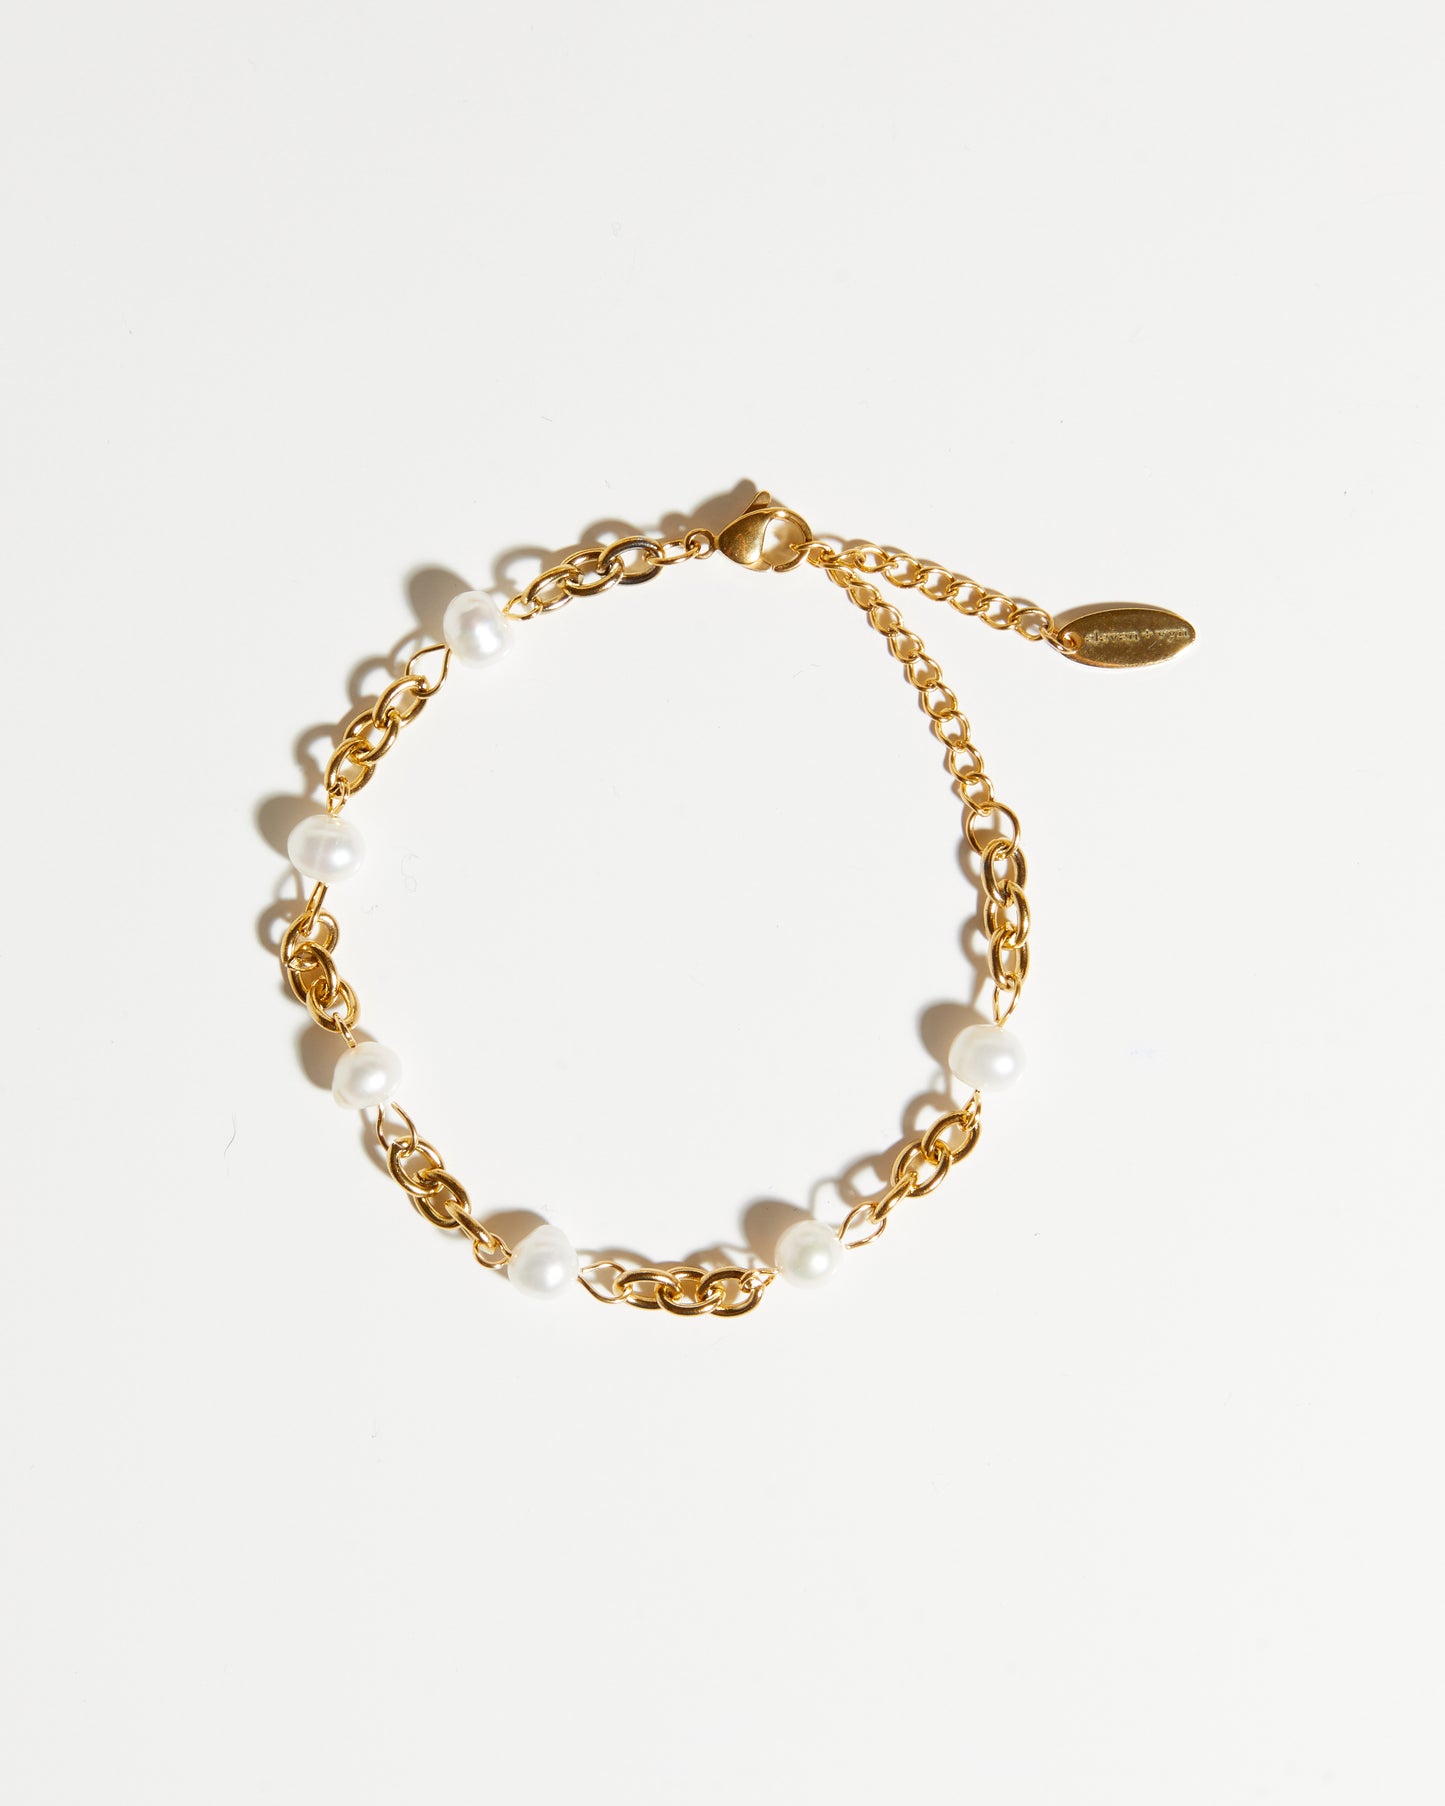 Pearl + chain bracelet